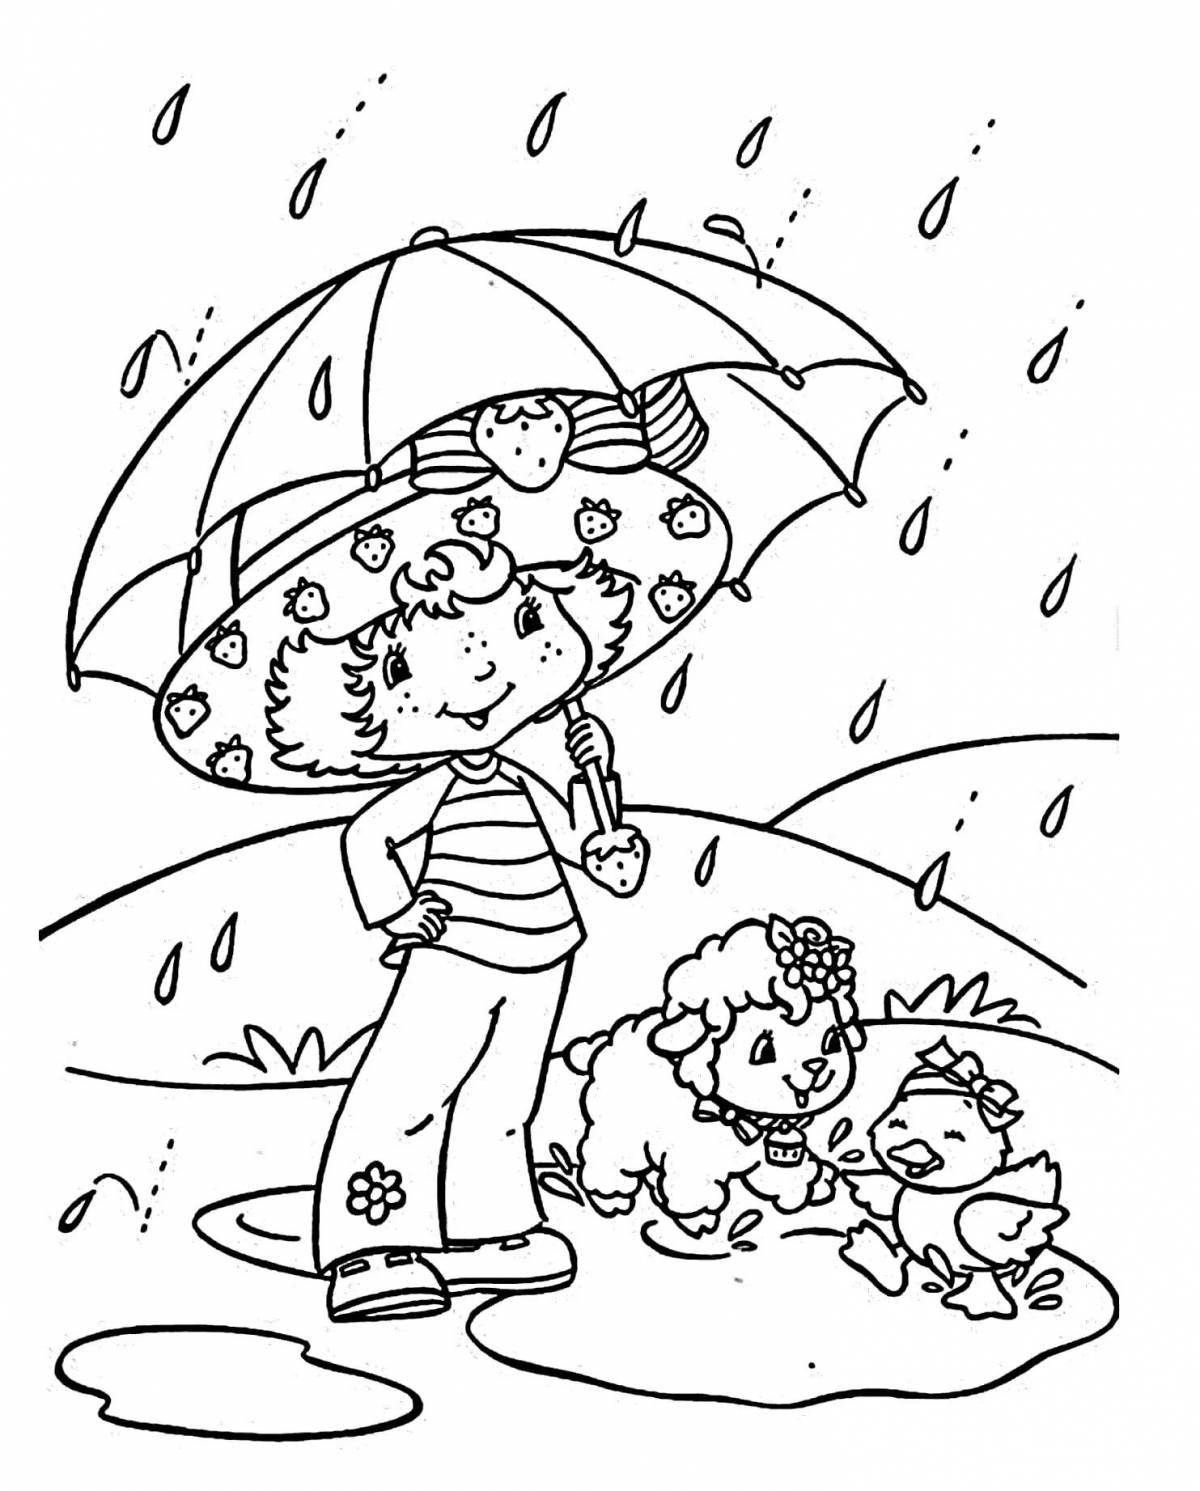 Fantastic rain coloring book for kids